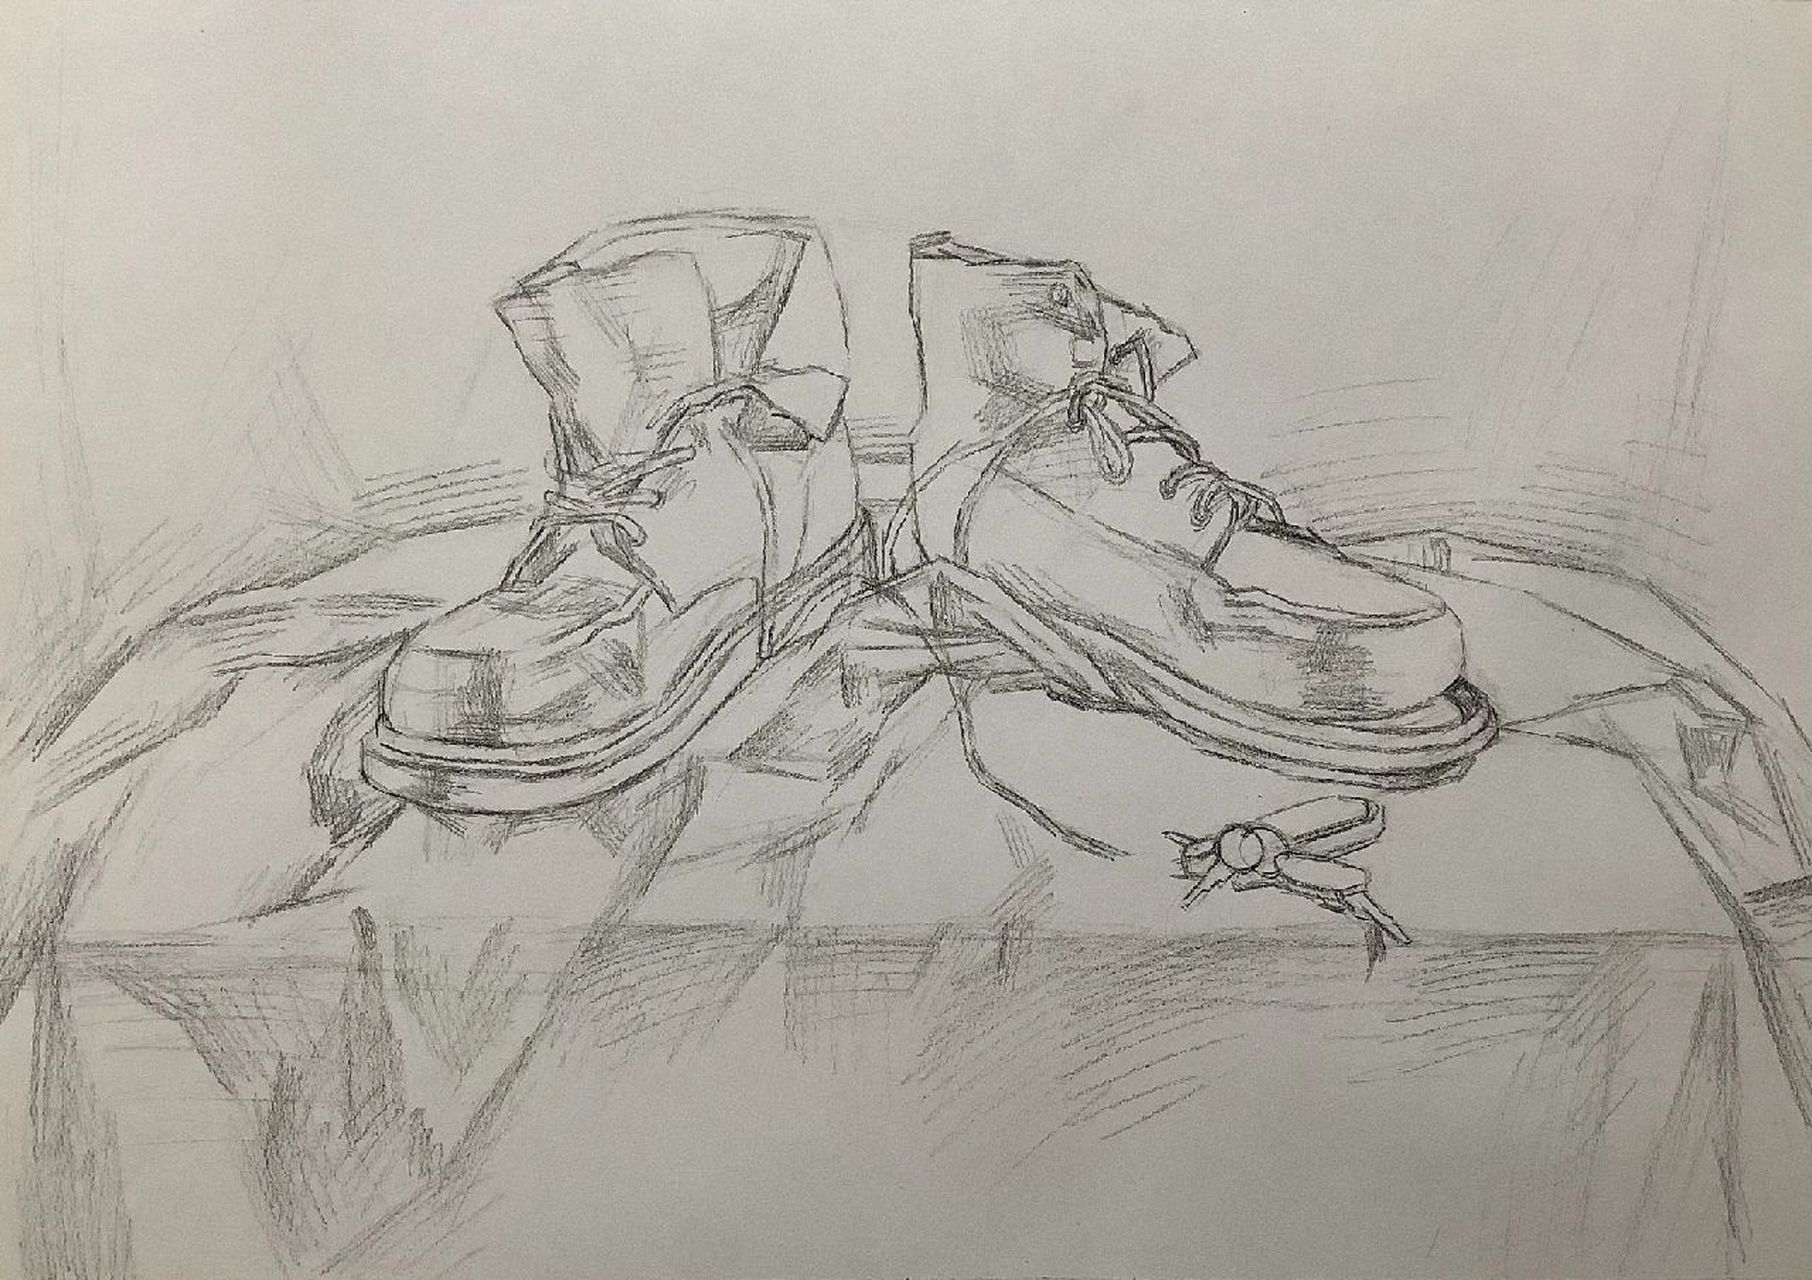 马丁靴手绘图图片